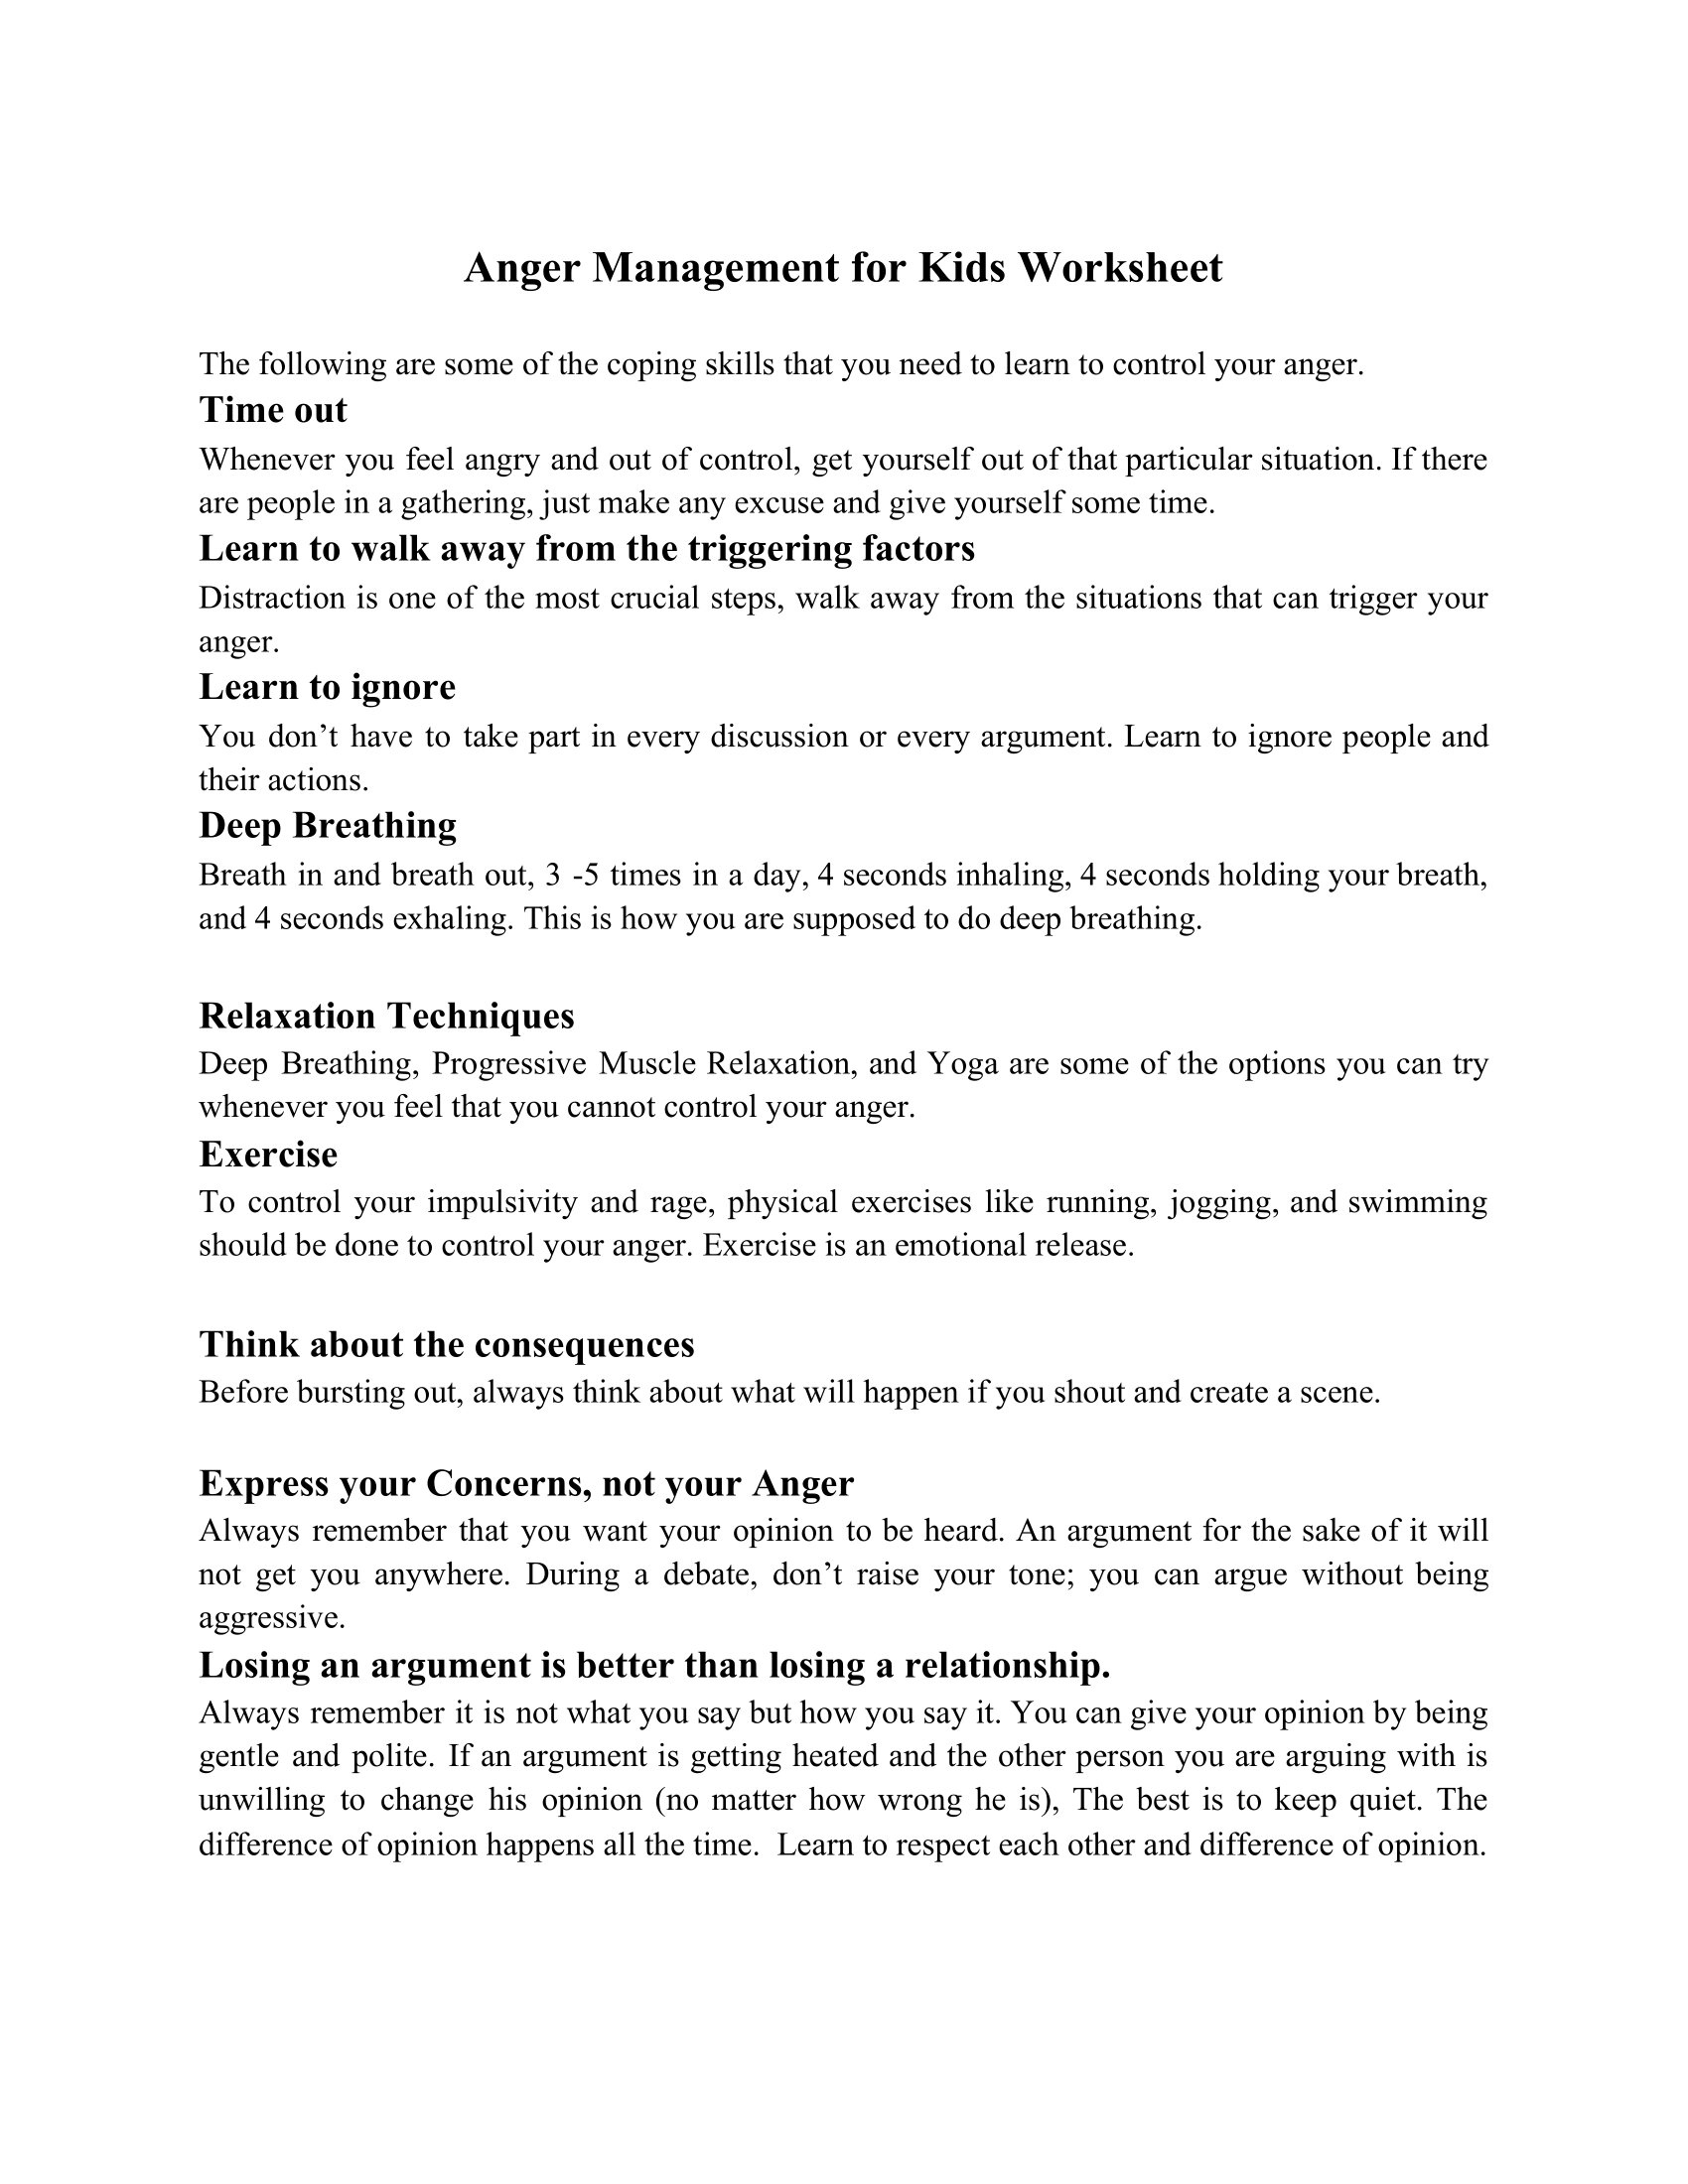 Anger Management For Kids Worksheet Mental Health Worksheets